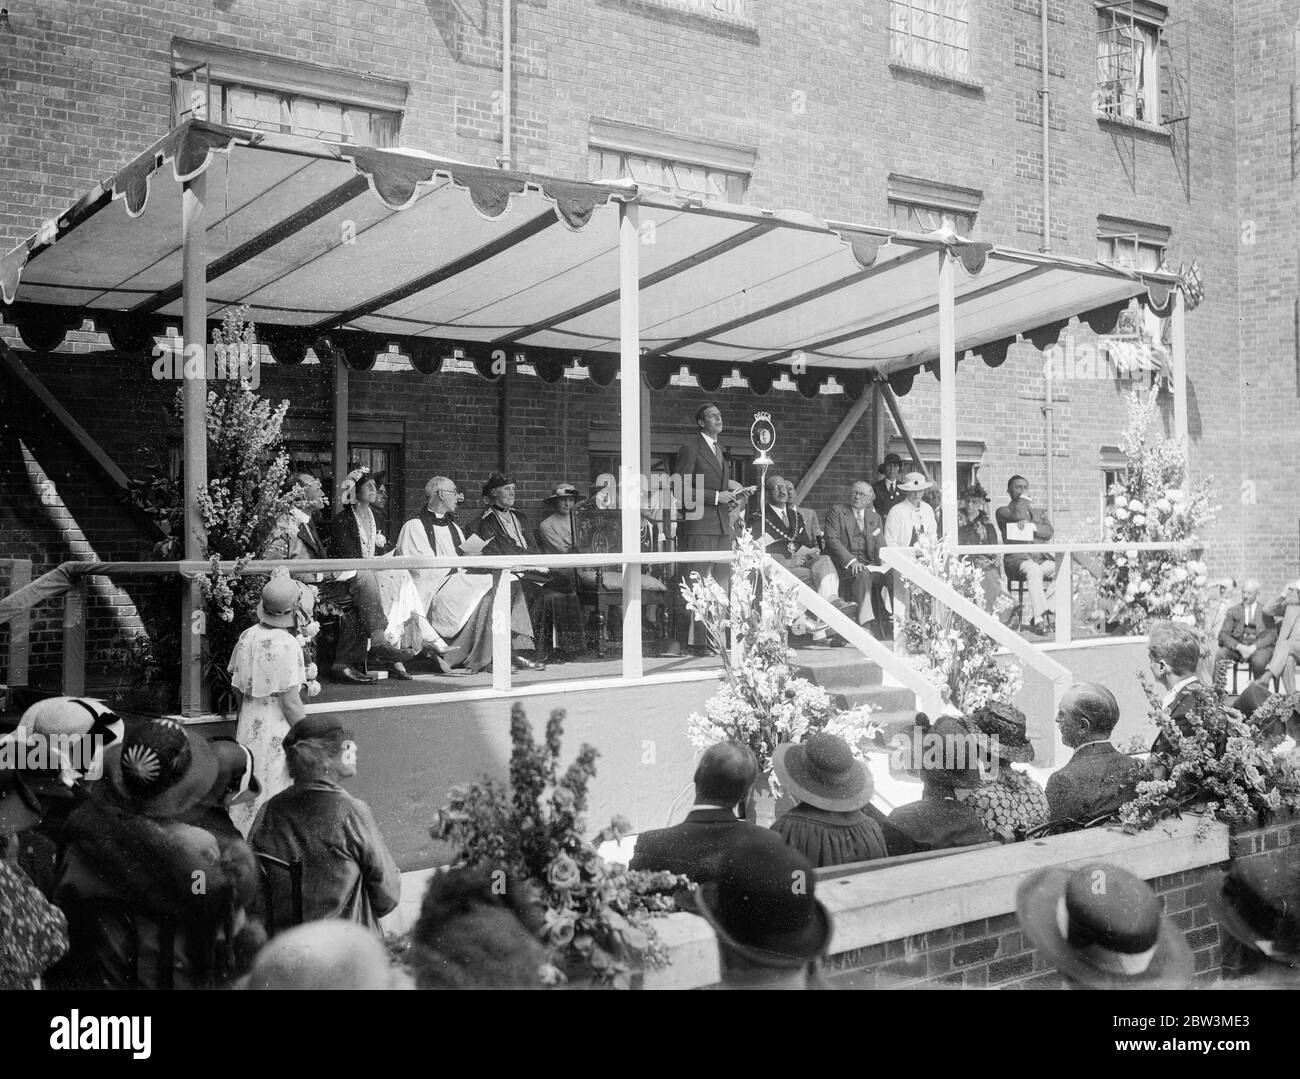 Le duc de Kent ouvre de nouveaux appartements à Westminster . Le duc de Kent , dépuisant pour la duchesse qui a annulé tous ses engagements , a ouvert les nouveaux appartements modernes du domaine Techbrook de la Westminster Housing Trust à Pulford Street . 6 juillet 1935 Banque D'Images